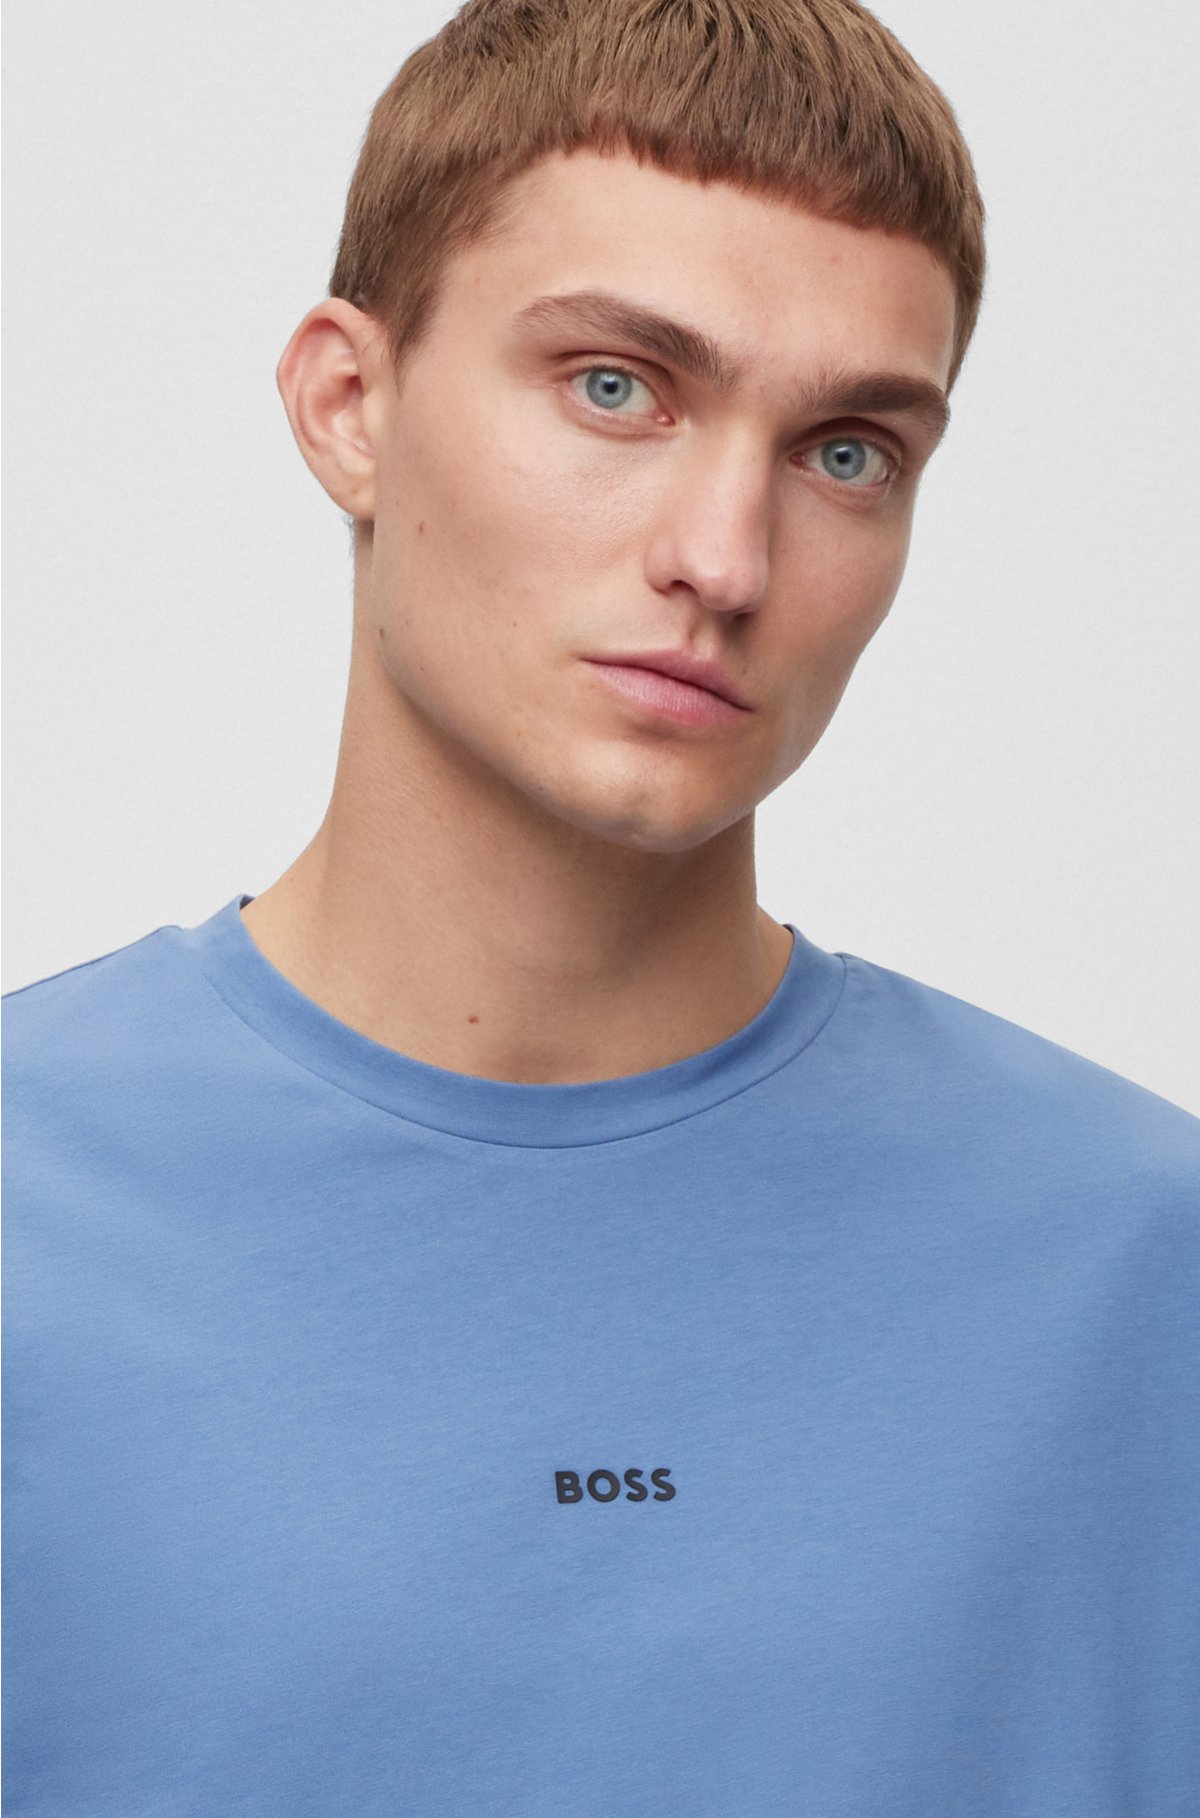 Uitbeelding laser klant BOSS - Relaxed-fit T-shirt van stretchkatoen met logoprint